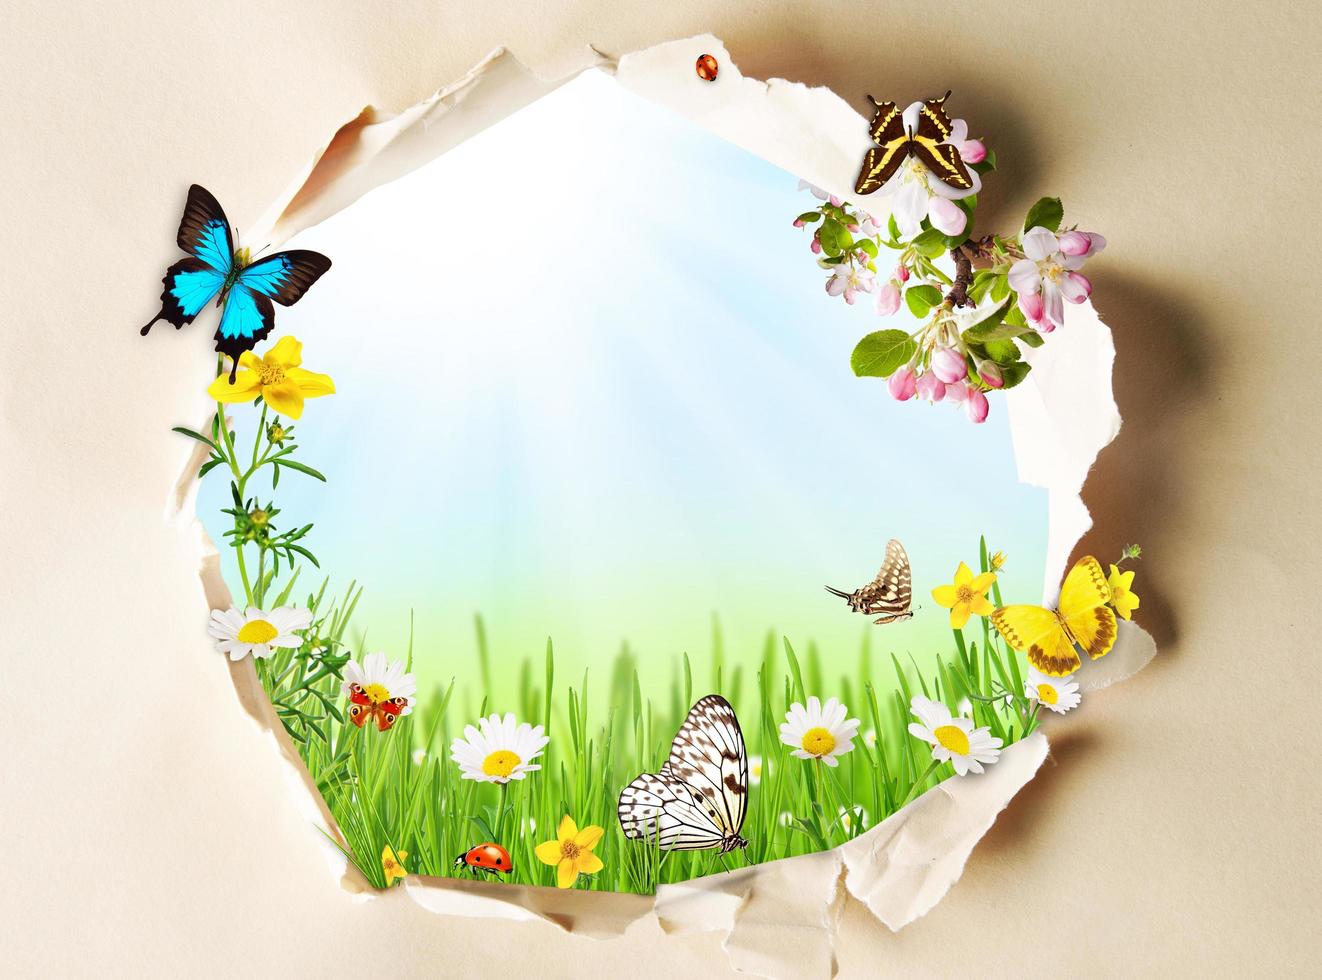 konceptuellt vårtema med gapigt papper och våräng med fjärilar och blommande kamomill foto